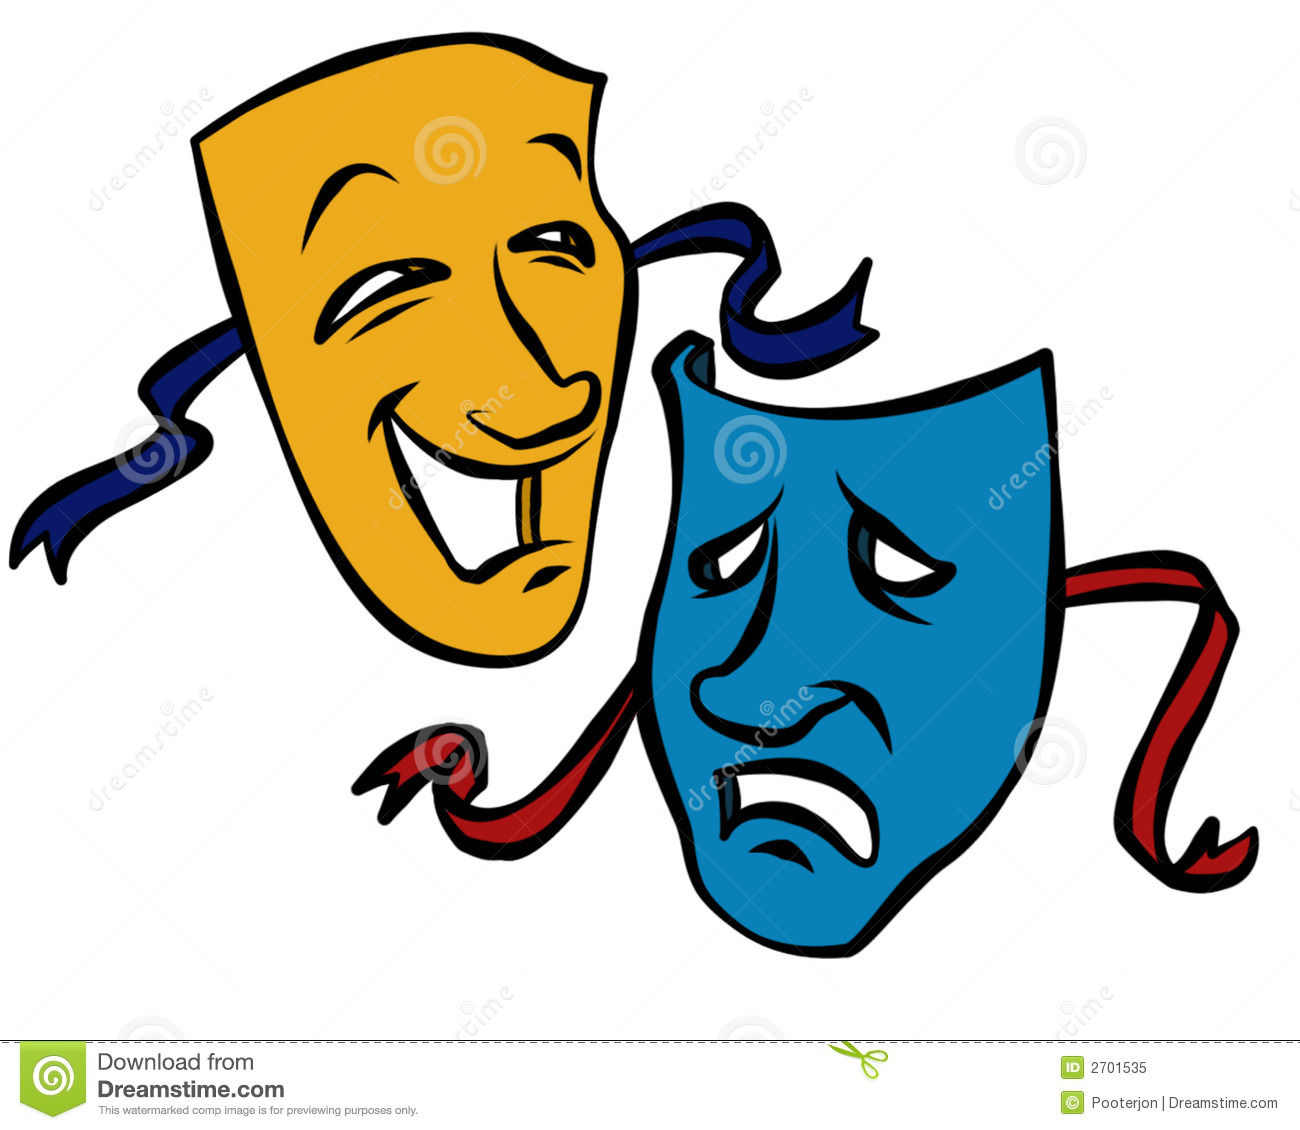 The Comedy And Tragedy Masks Mr No Pr No 4 8859 21